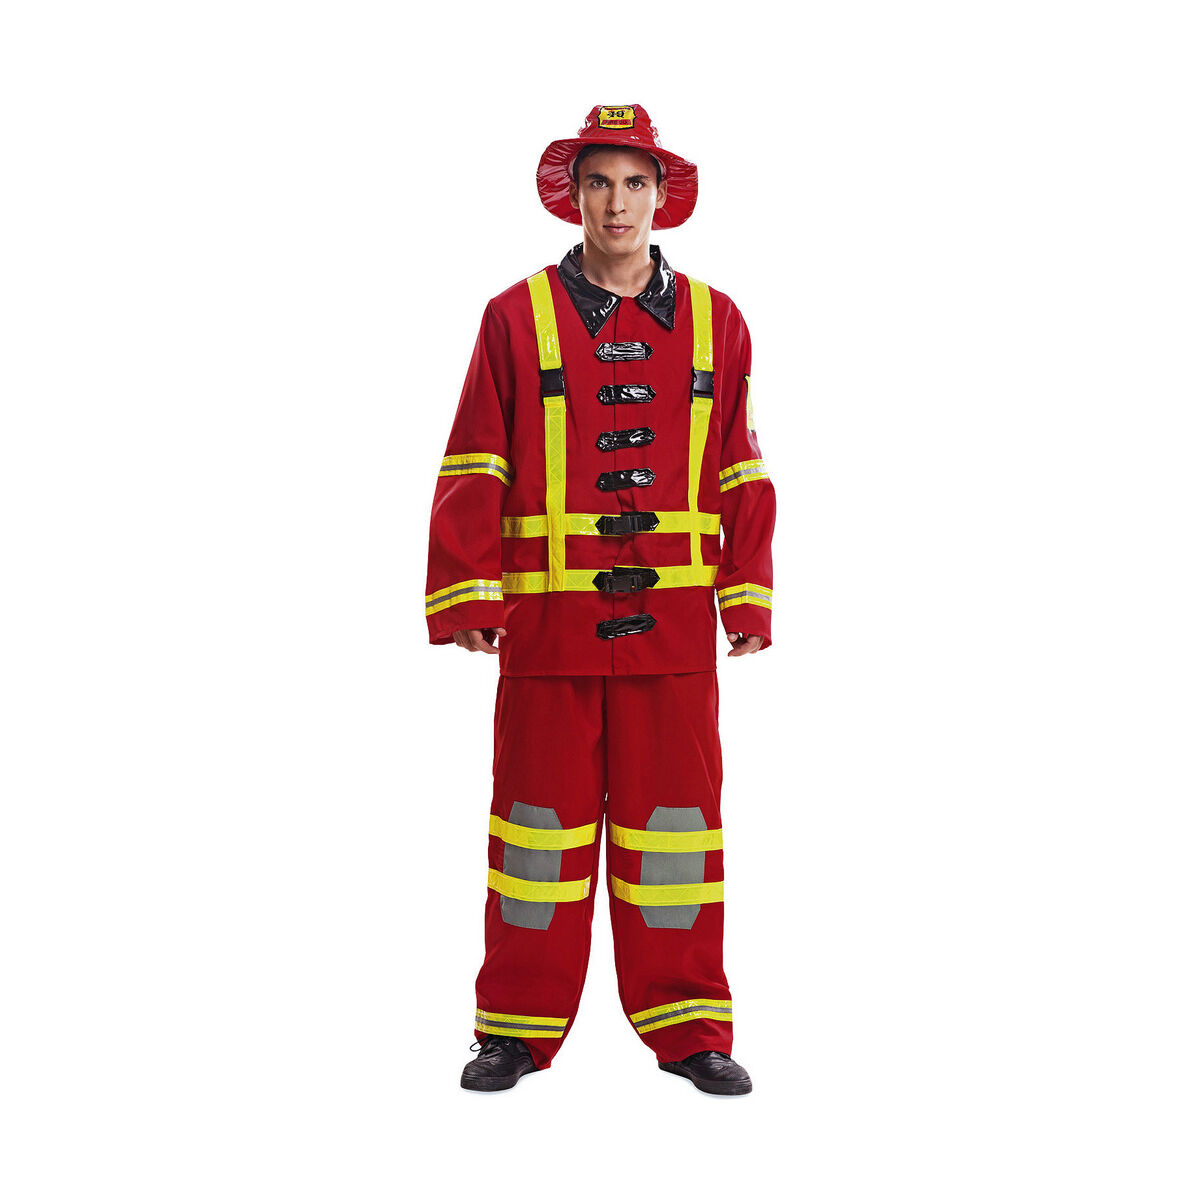 Ultimatives Feuerwehrmann-Kostüm für Herren - 3-teiliges Set - S